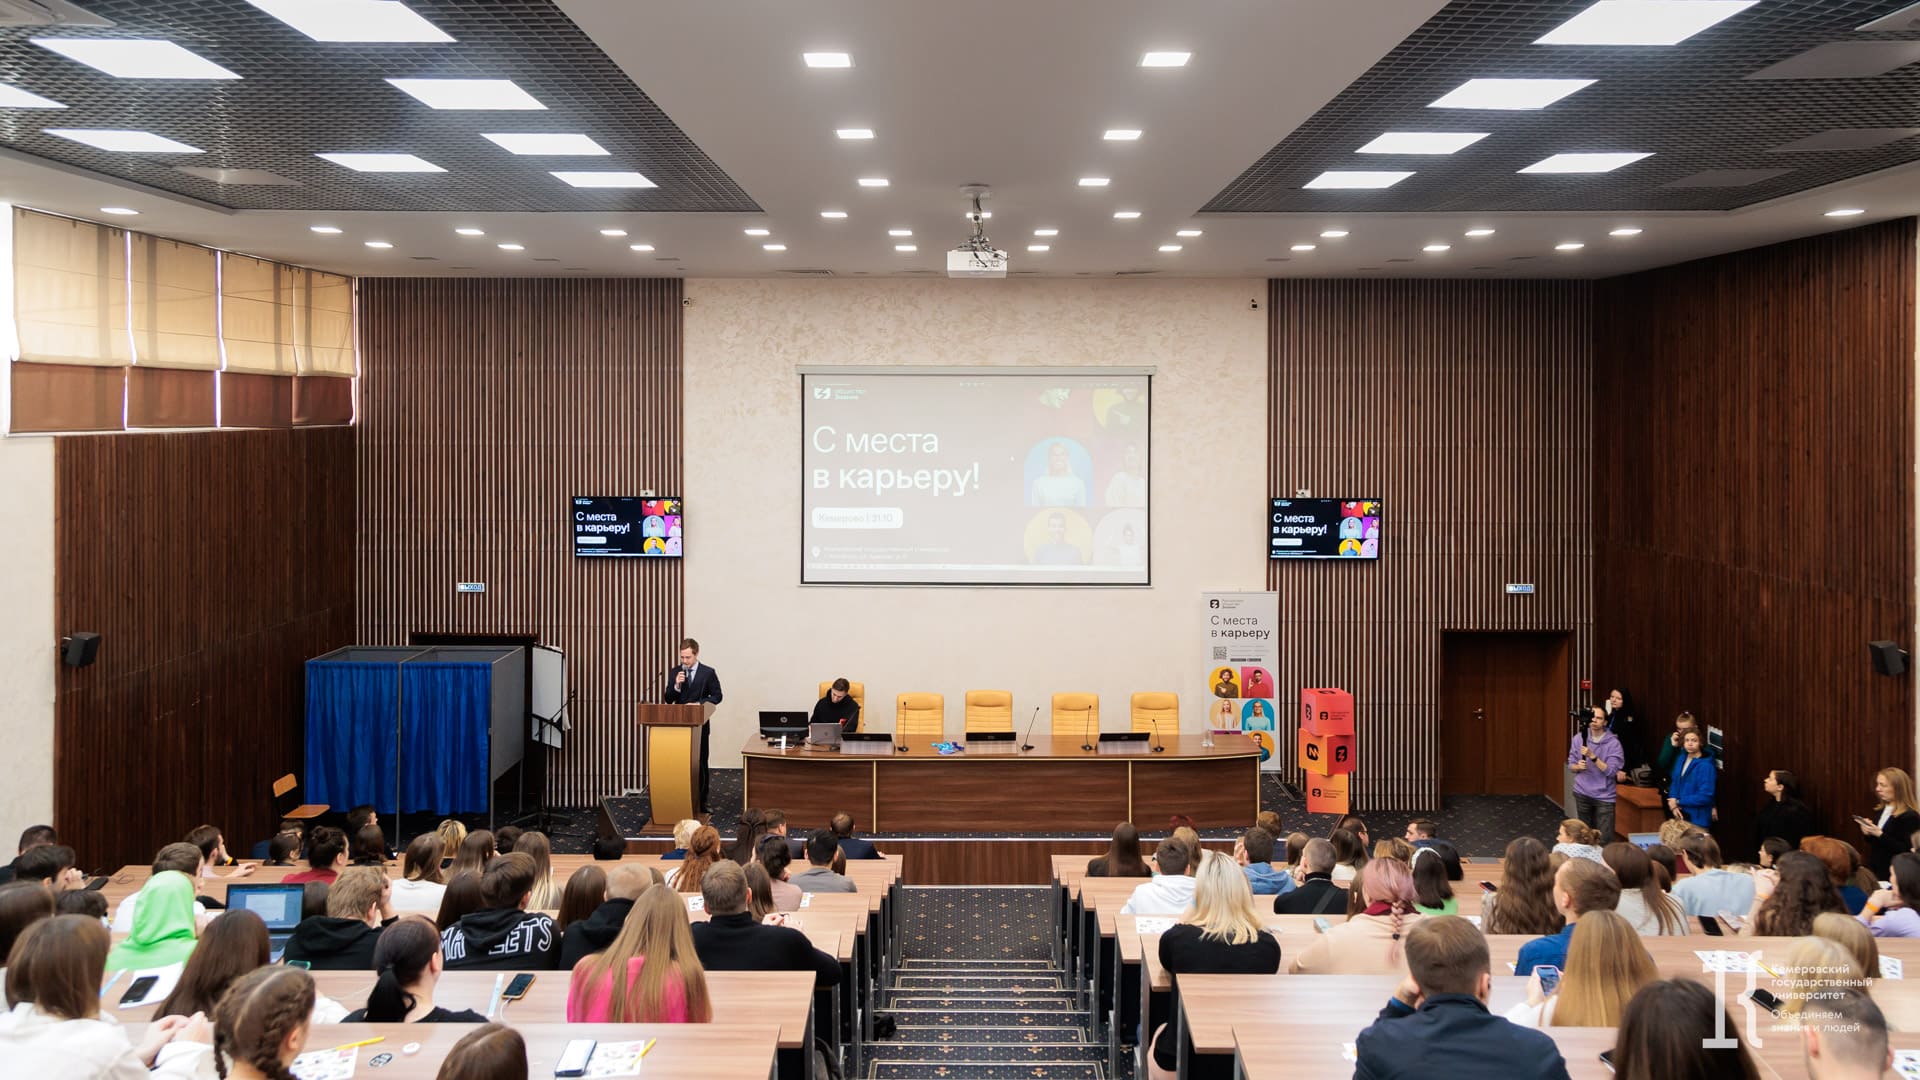 КемГУ стал площадкой проведения молодёжного форума «С места в карьеру» Российского общества «Знание»